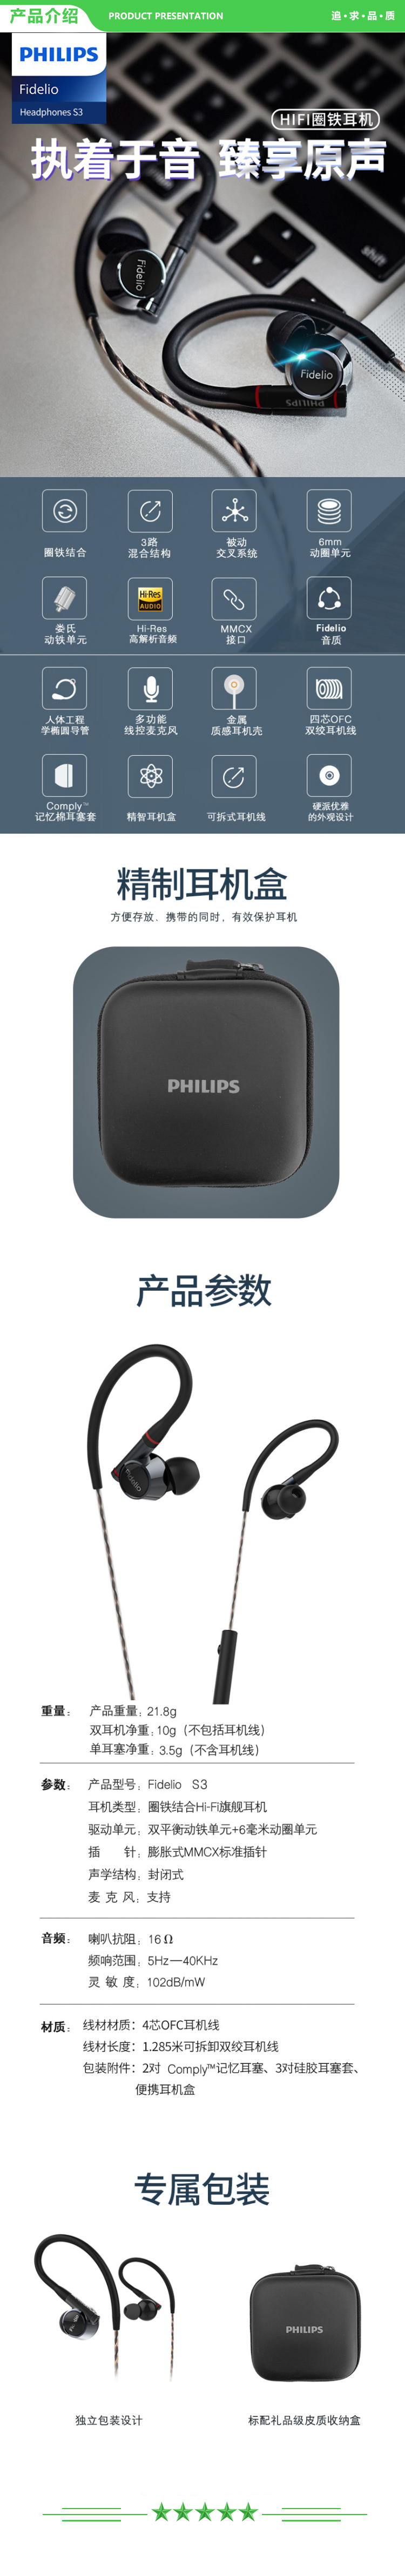 飞利浦 PHILIPS S3 有线耳机入耳式 HiFi旗舰 一动圈两动铁高保真音质发烧 手机可直推3.5mm音频接口 .jpg